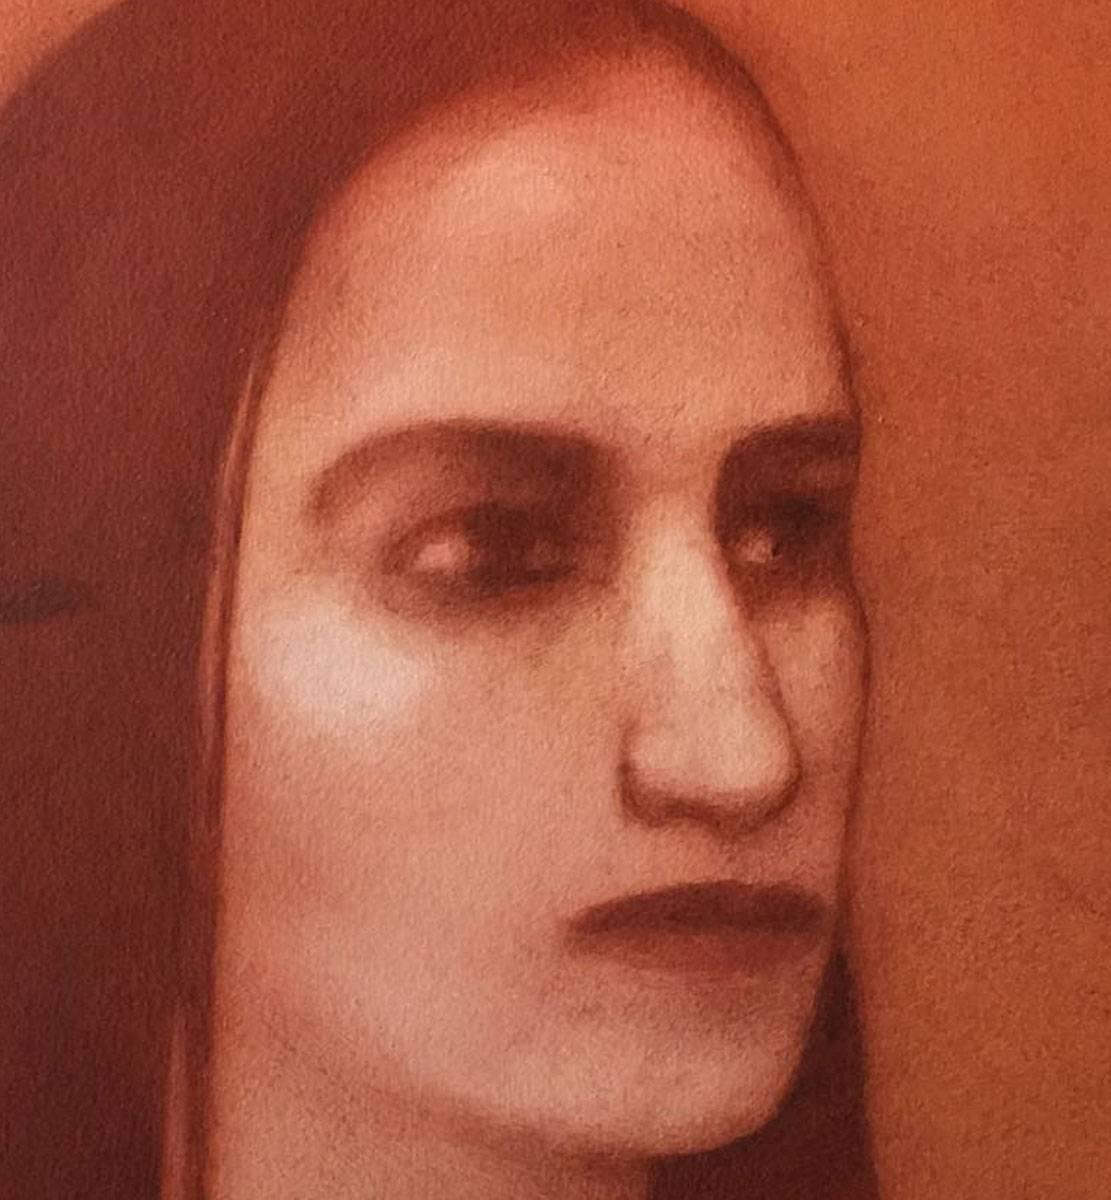 Woman mit langem Haar, ruhiger Augenhöhe, figurativ, rot,braun von zeitgenössischer Künstlerin (Braun), Figurative Painting, von Chandra Bhattacharya